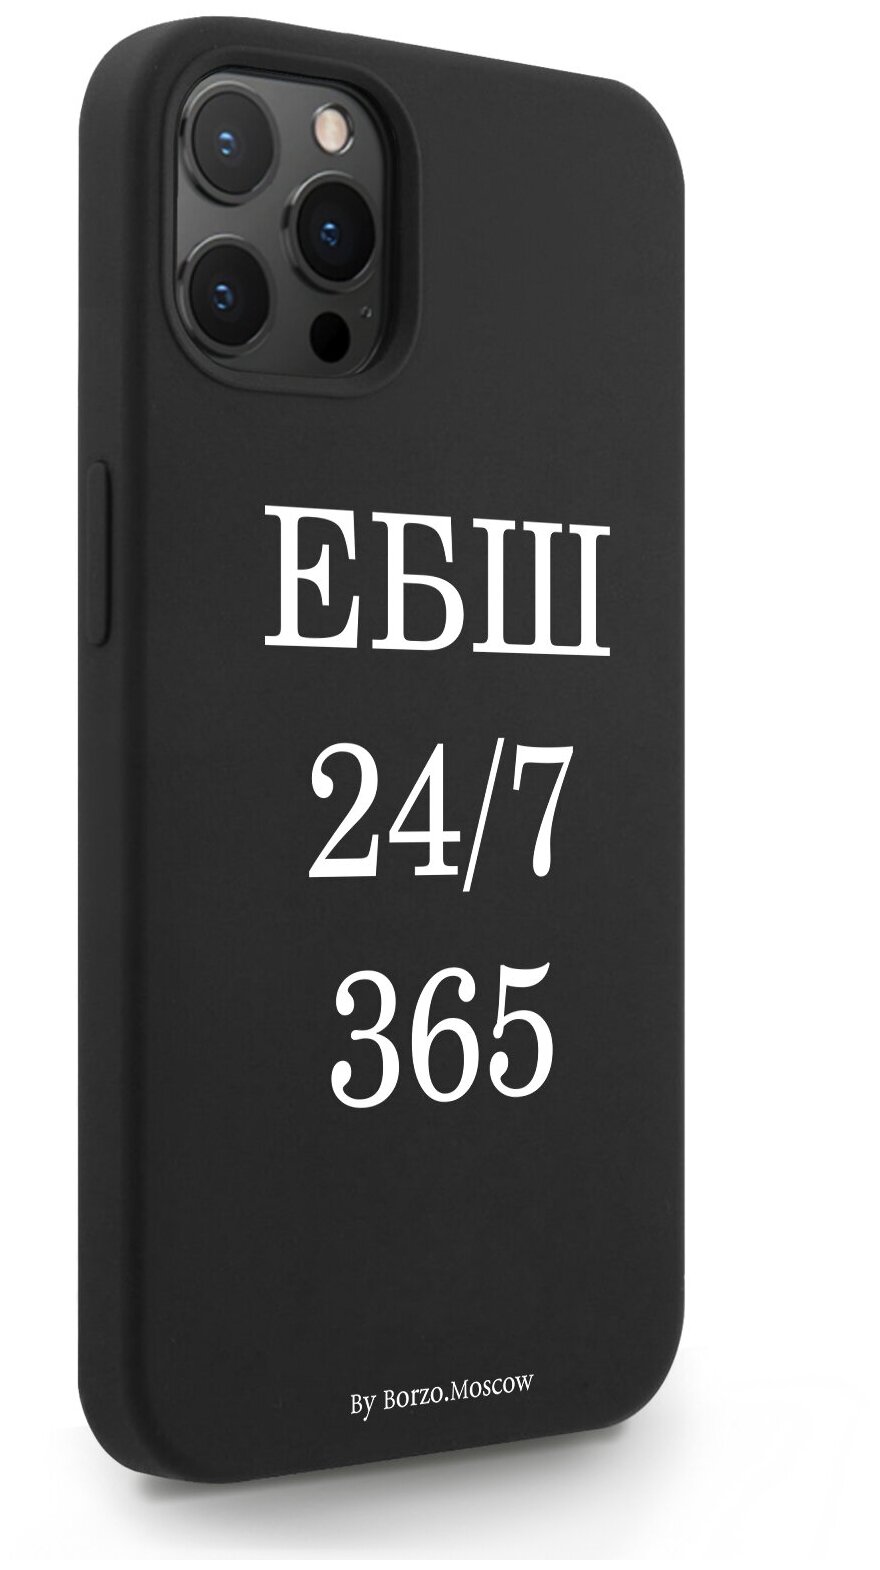 Черный силиконовый чехол Borzo.Moscow для iPhone 12 Pro Max ЕБШ 24/7/365 для Айфон 12 Про Макс